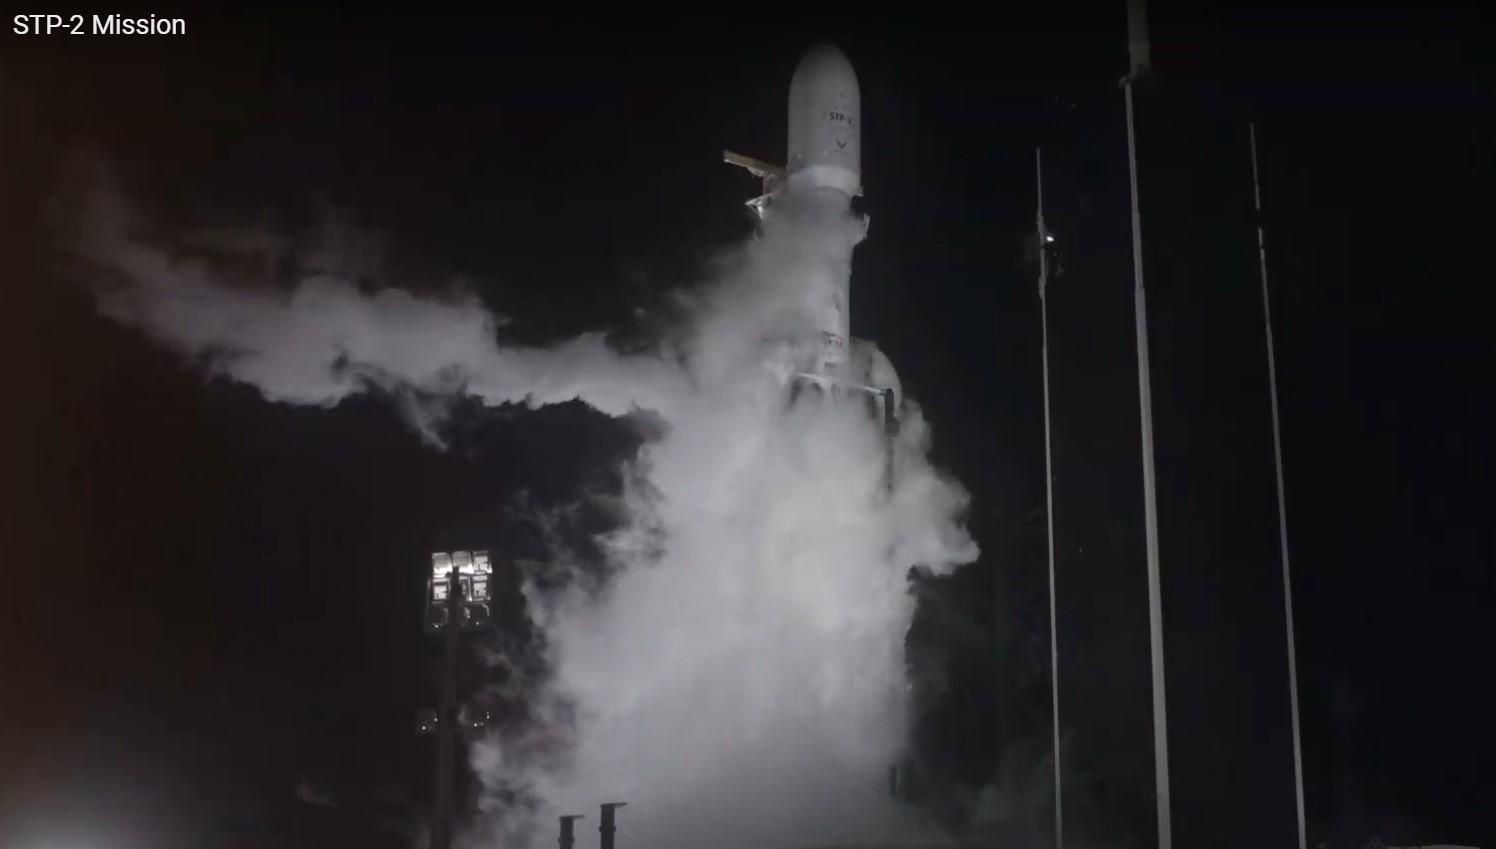 SpaceX Илона Маска запустила Falcon Heavy с остатками 152 человек